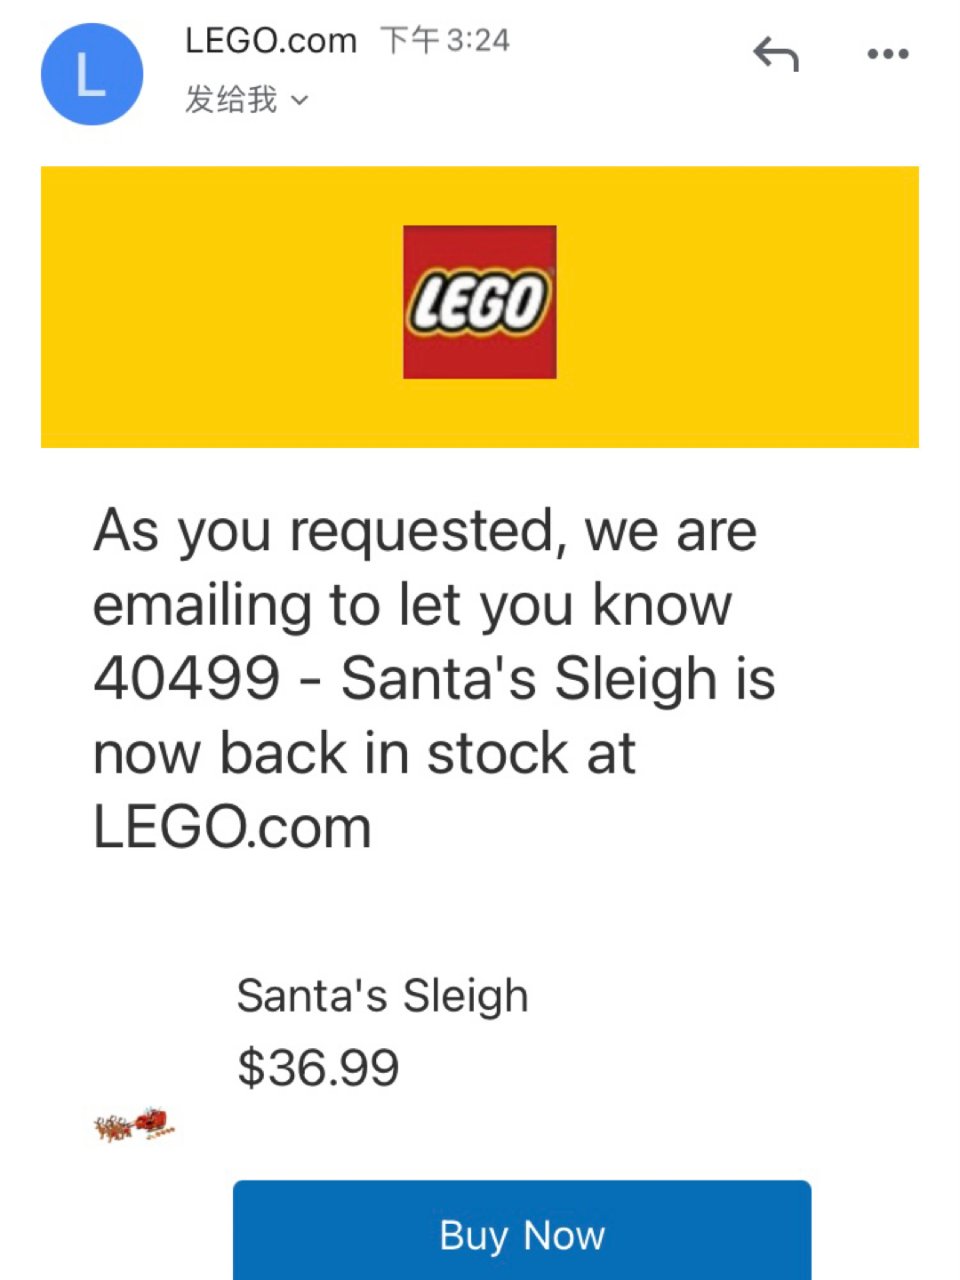 收到了lego邮件通知立刻下单了圣诞老人...